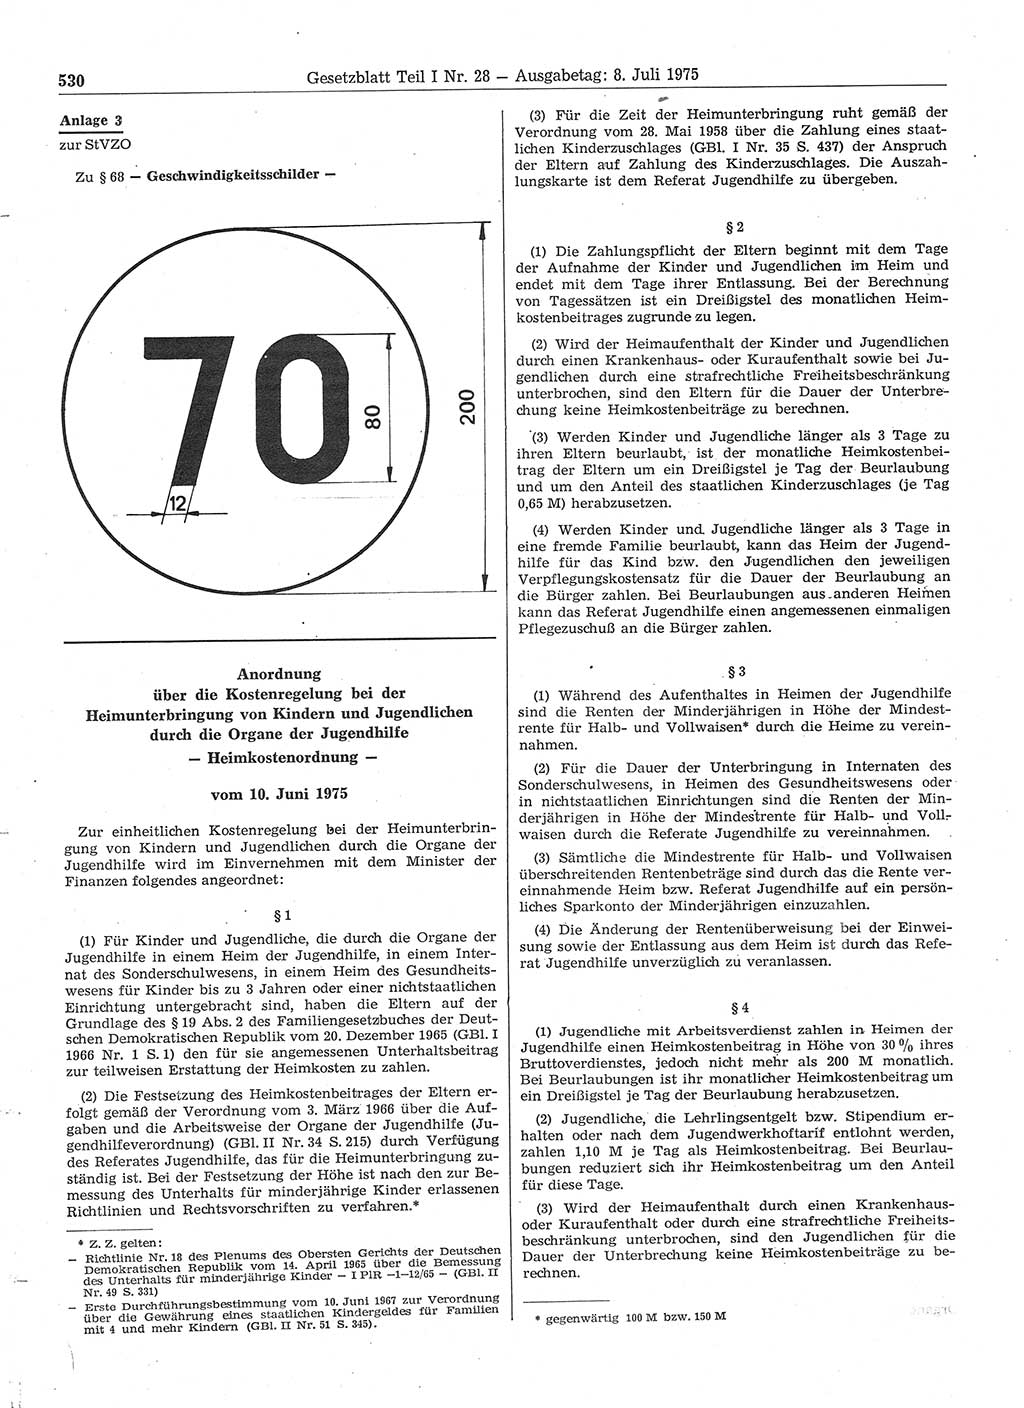 Gesetzblatt (GBl.) der Deutschen Demokratischen Republik (DDR) Teil Ⅰ 1975, Seite 530 (GBl. DDR Ⅰ 1975, S. 530)